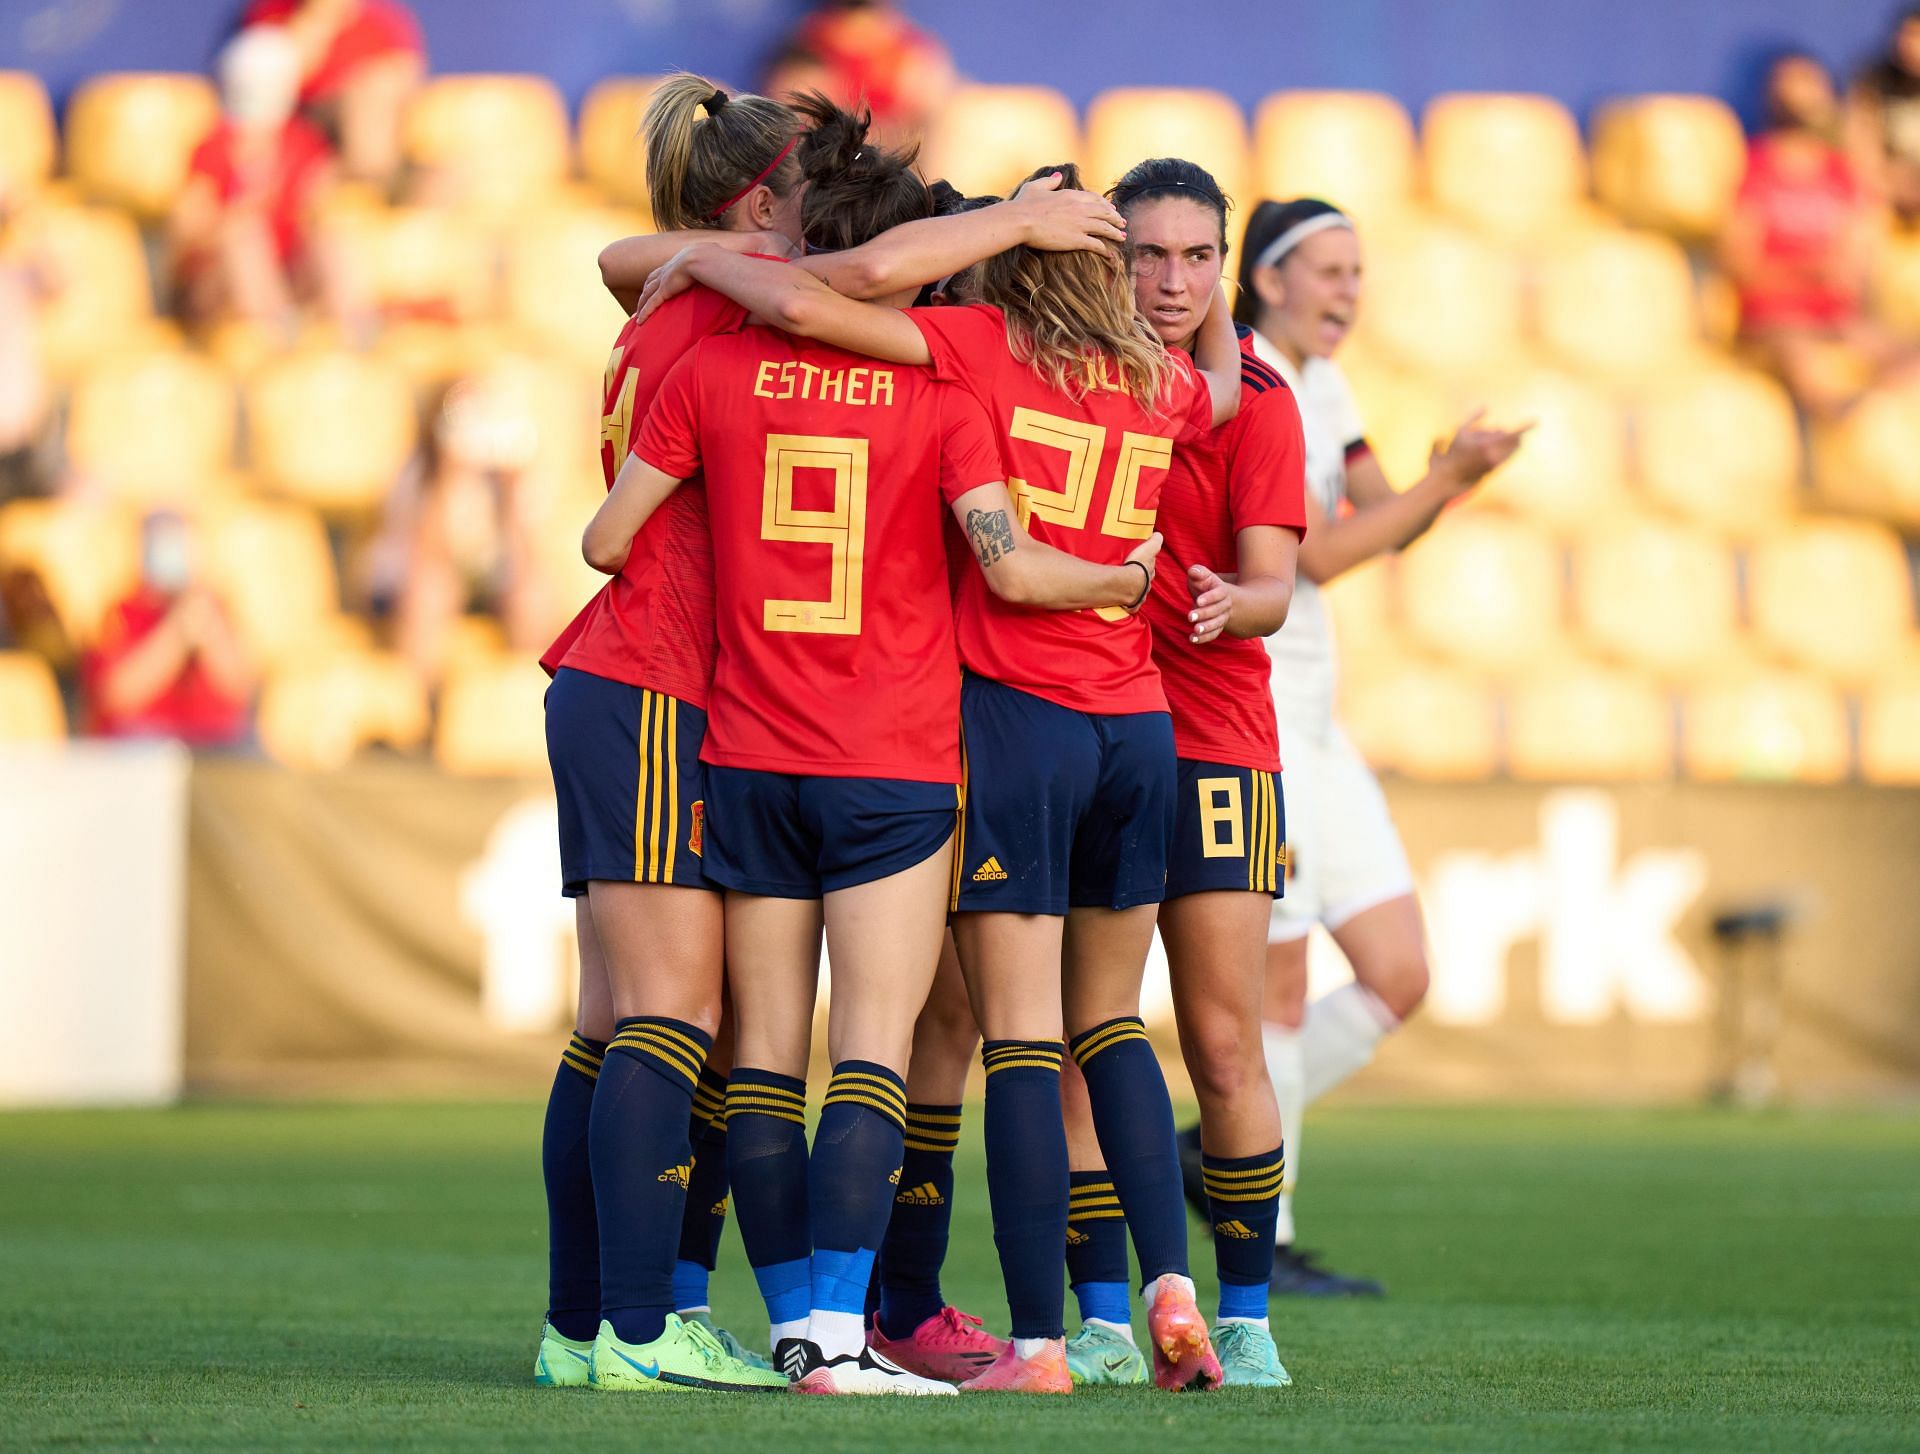 Spain Women will face Brazil Women on Thursday